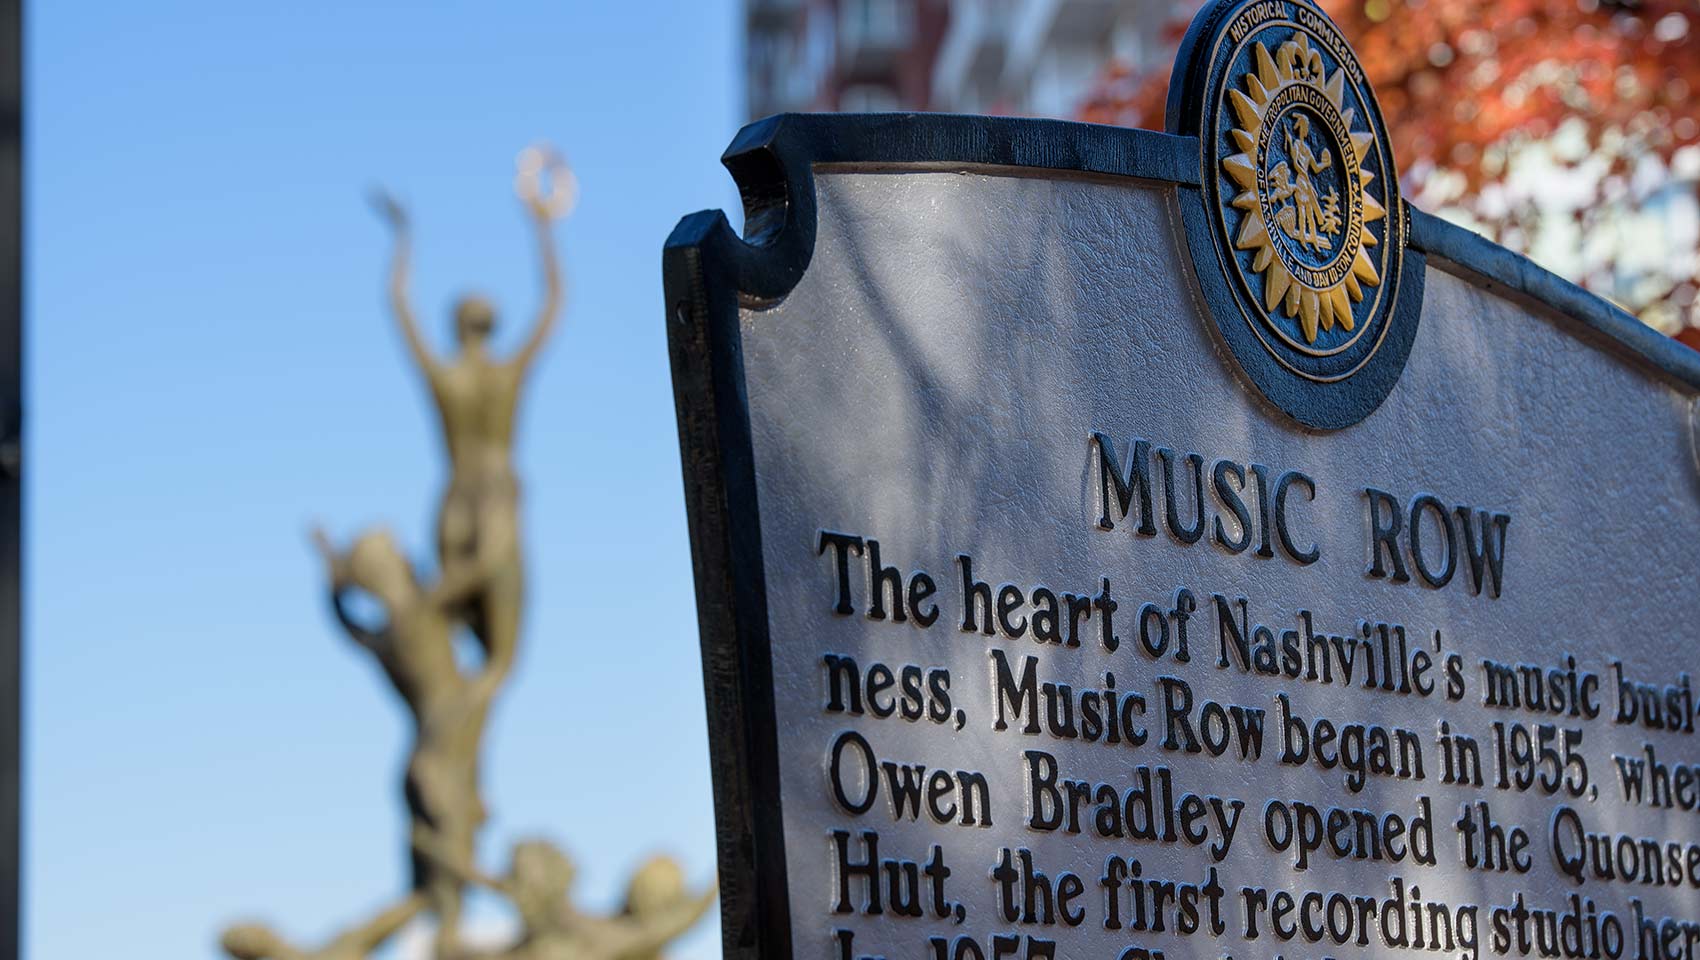 Nashville's music row